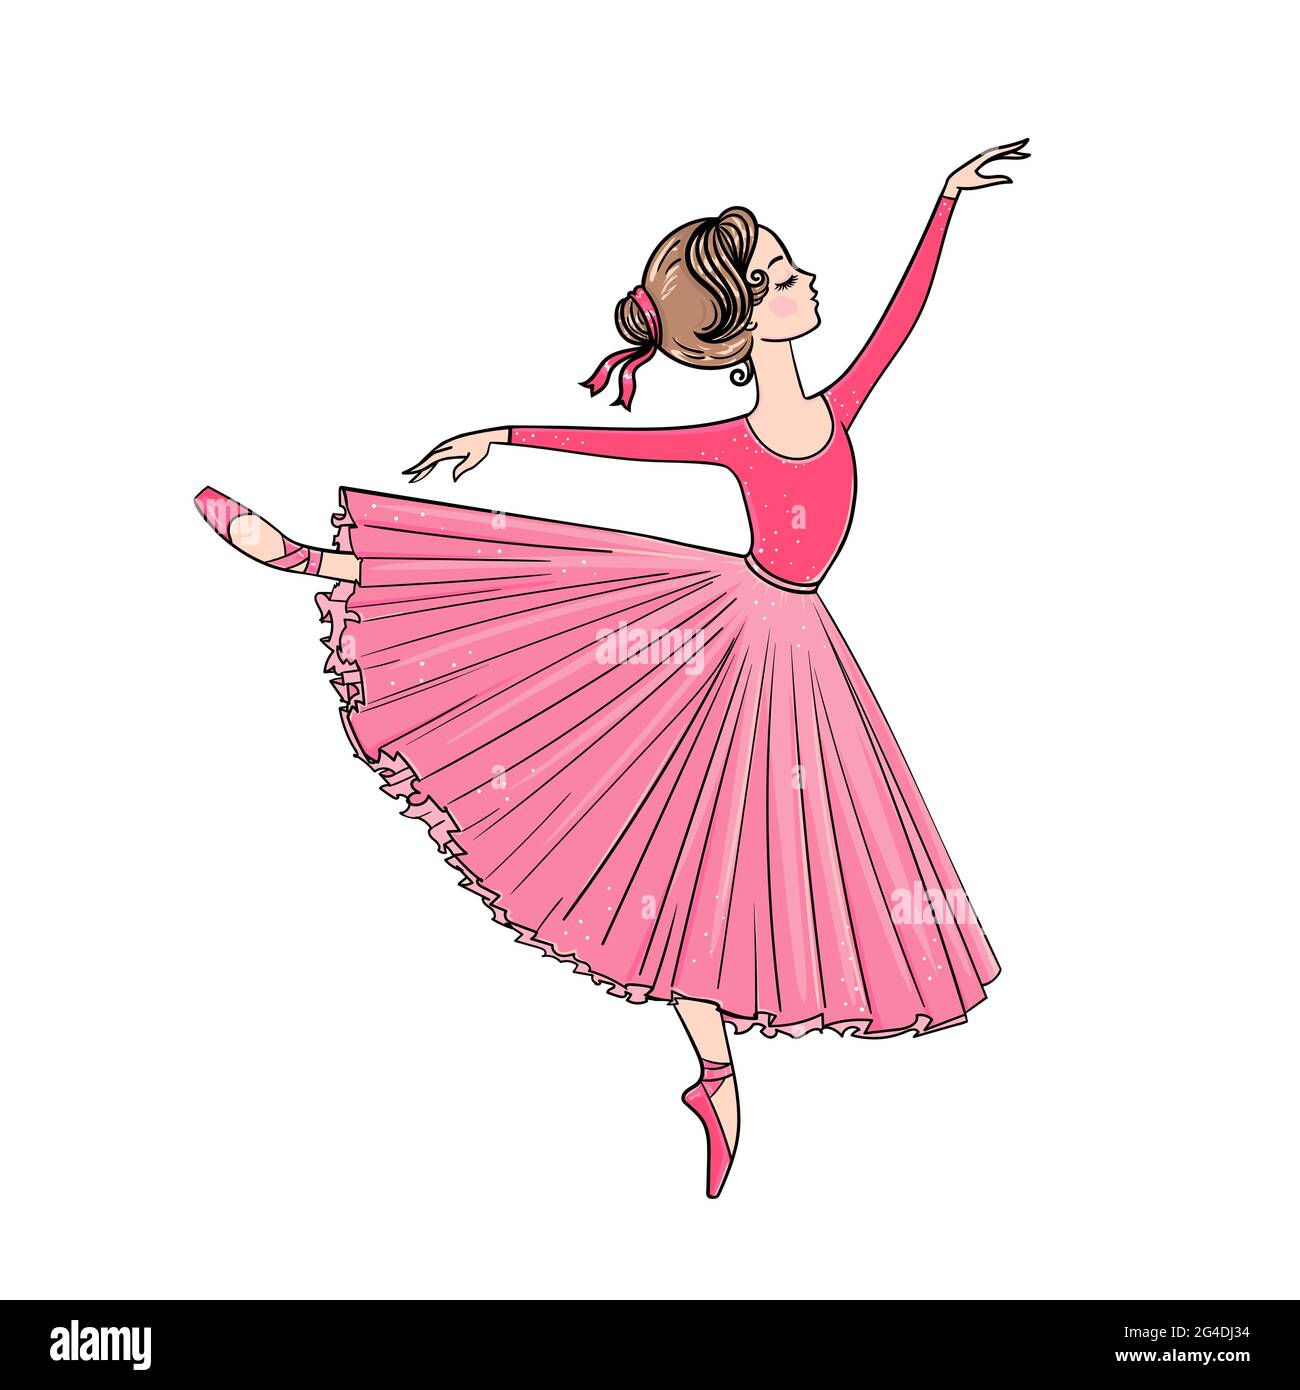 Handgezeichnete schöne kleine Ballerina girl.Dancer in Tutu und spitzenschuhe isoliert auf weißem Hintergrund. Stock Vektor